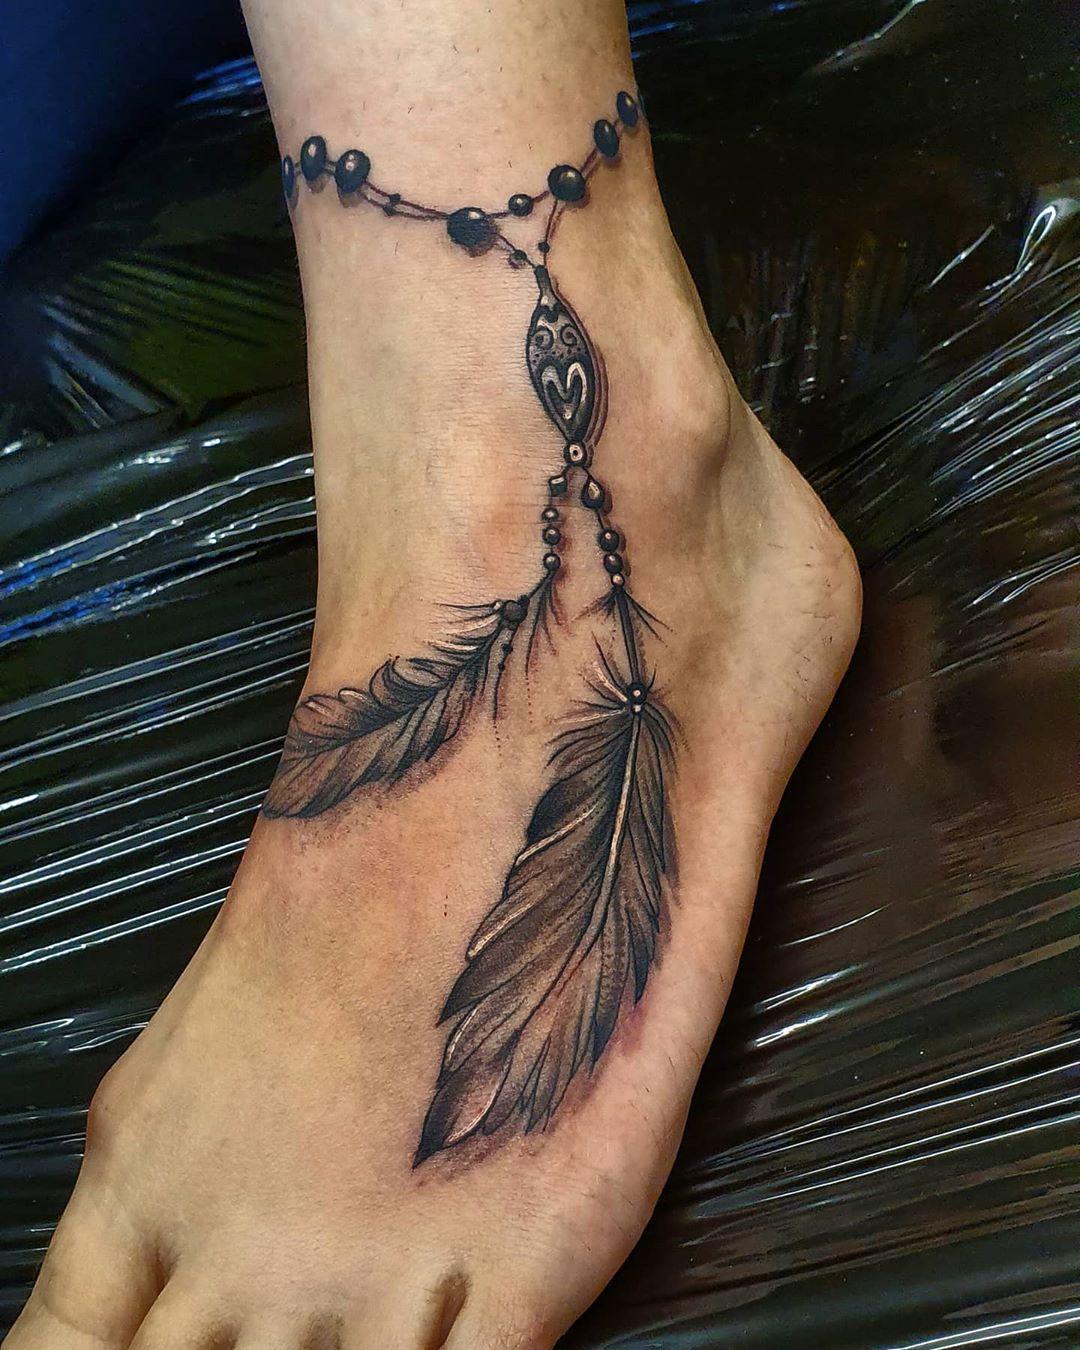 Sort og hvid tatovering med ankelarmbånd med fjer i indianerstil